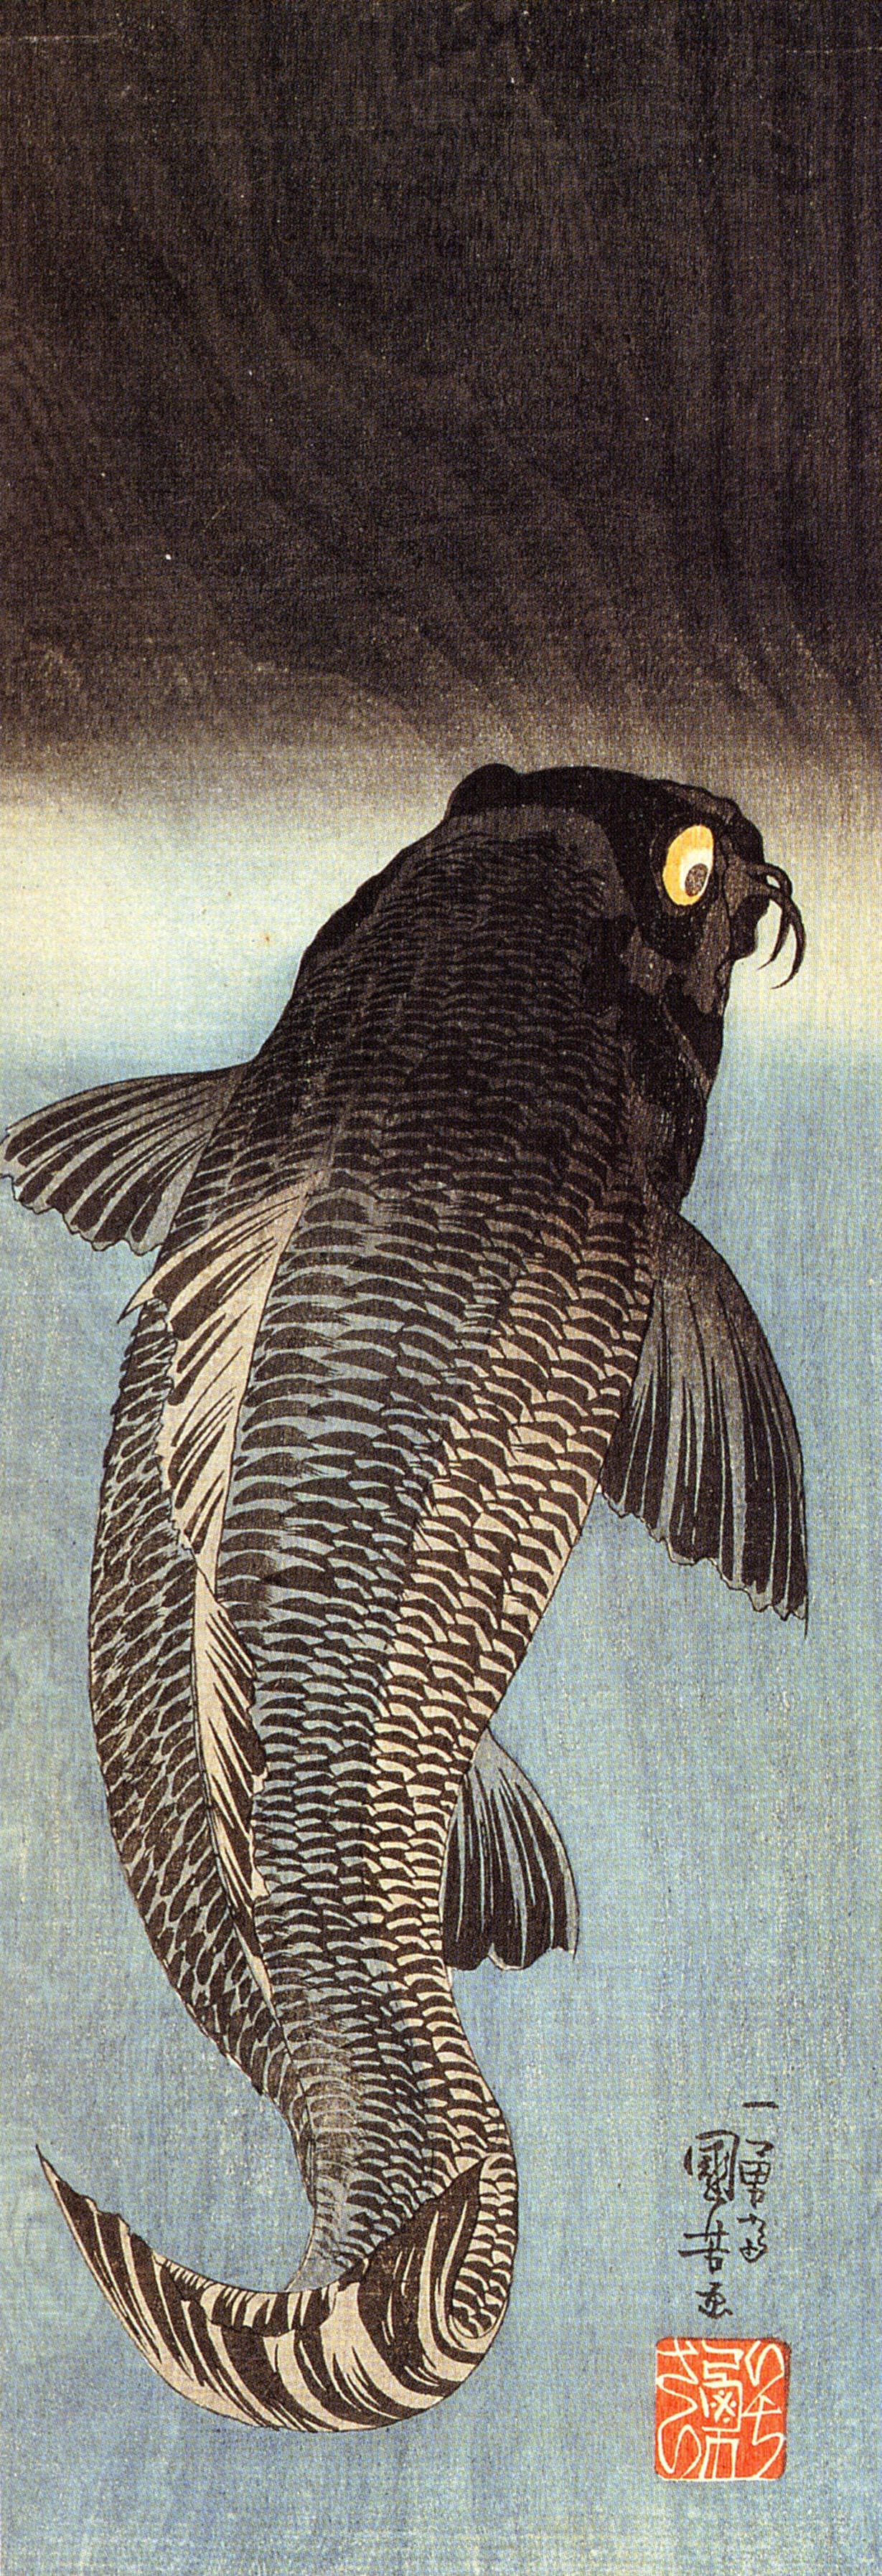 Black carp by Utagawa Kuniyoshi. Ukiyo-e style